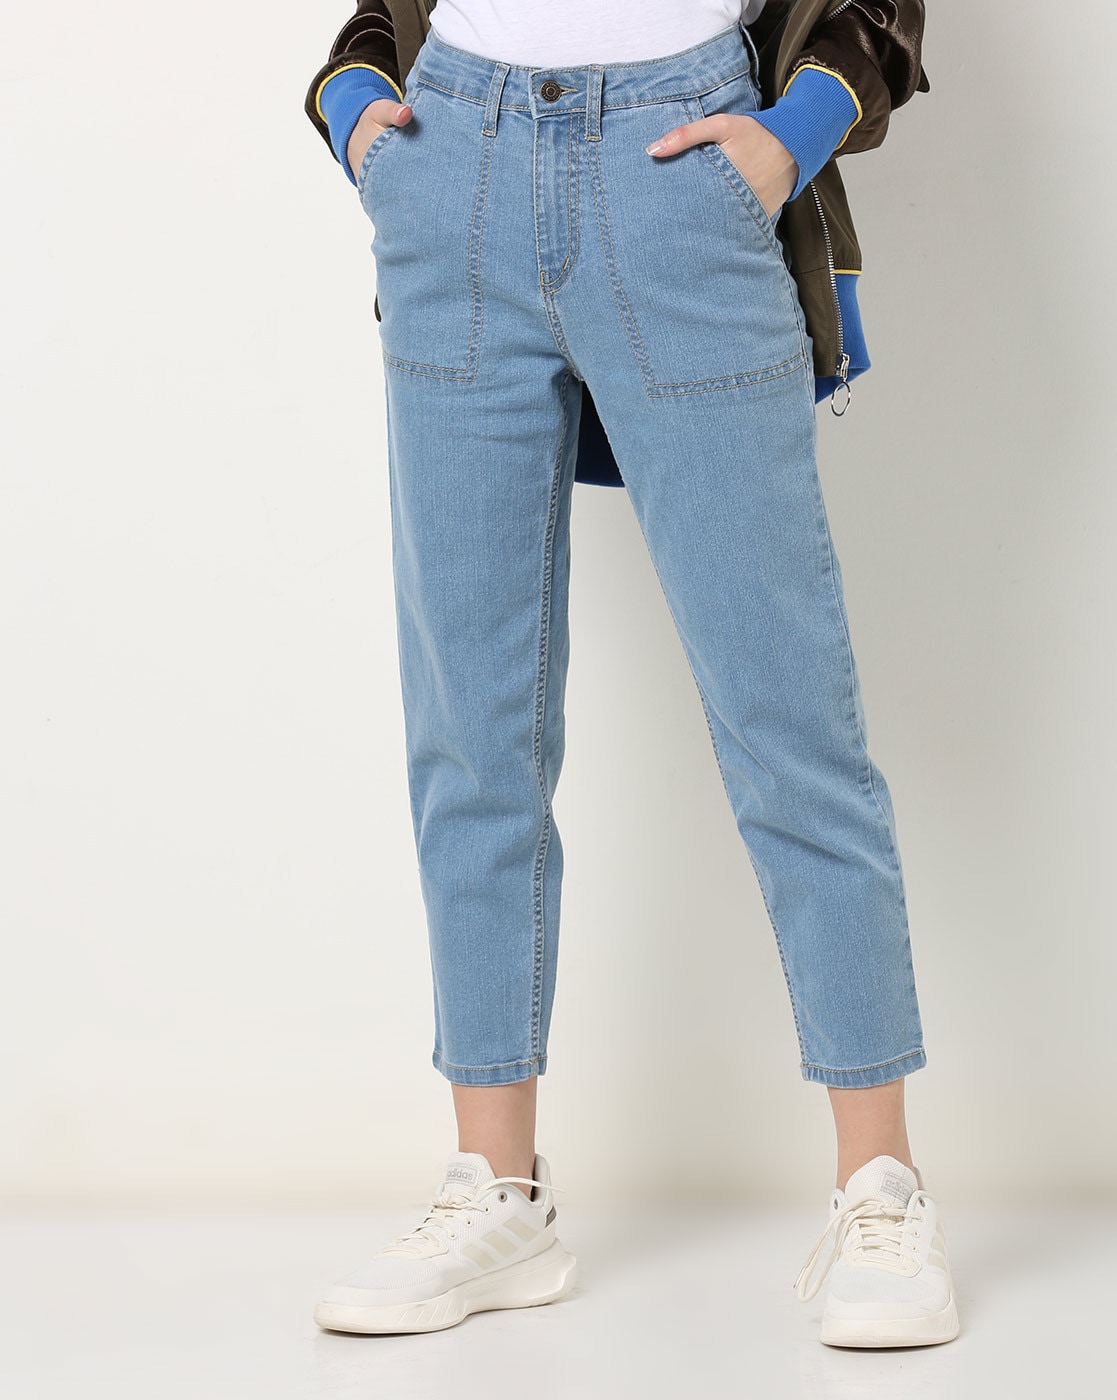 summer jeans for girls